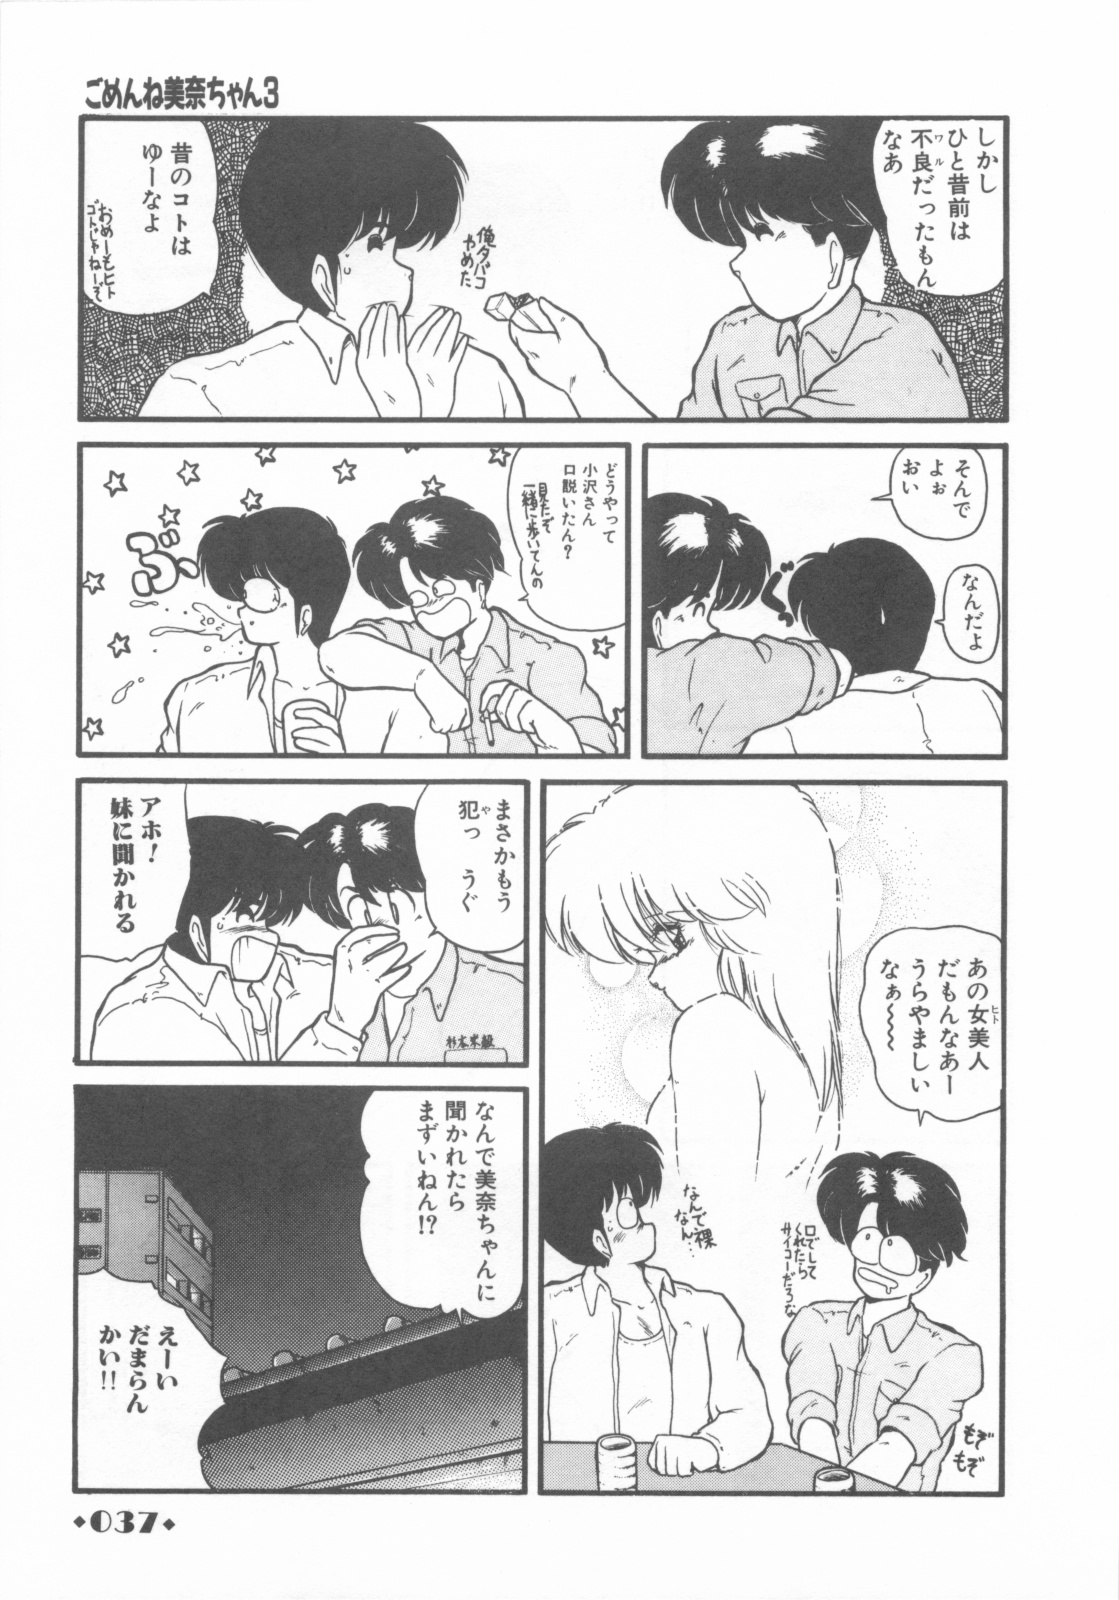 [Makuwa] Gomenne Mina-chan 1 page 39 full